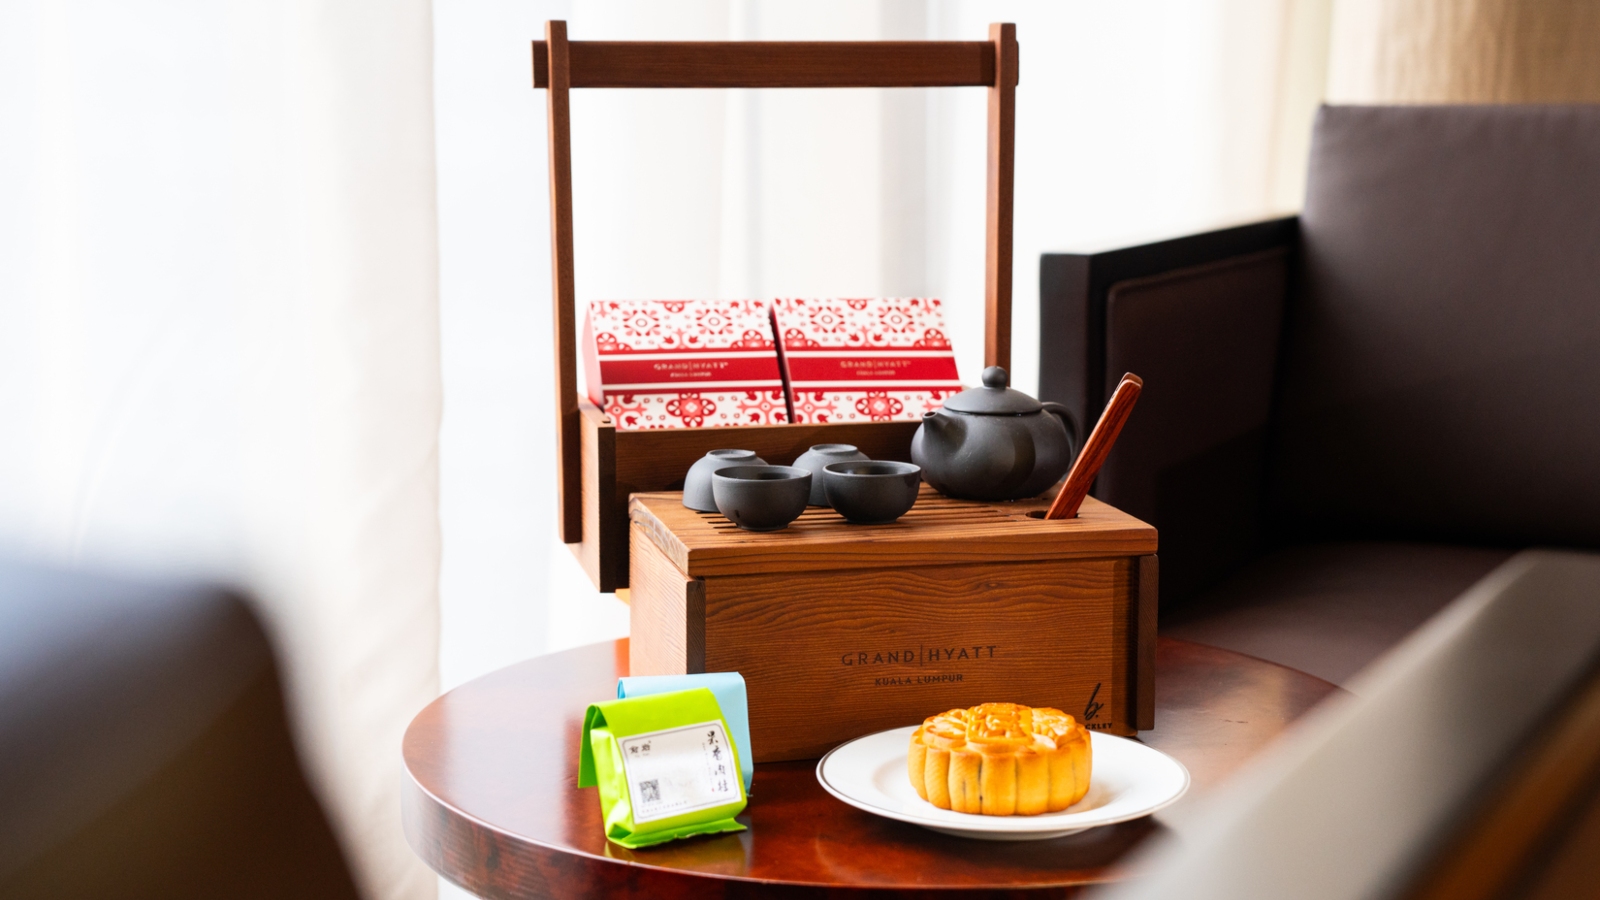 Malaya Tea Room's Malaysian-inspired afternoon tea in a box